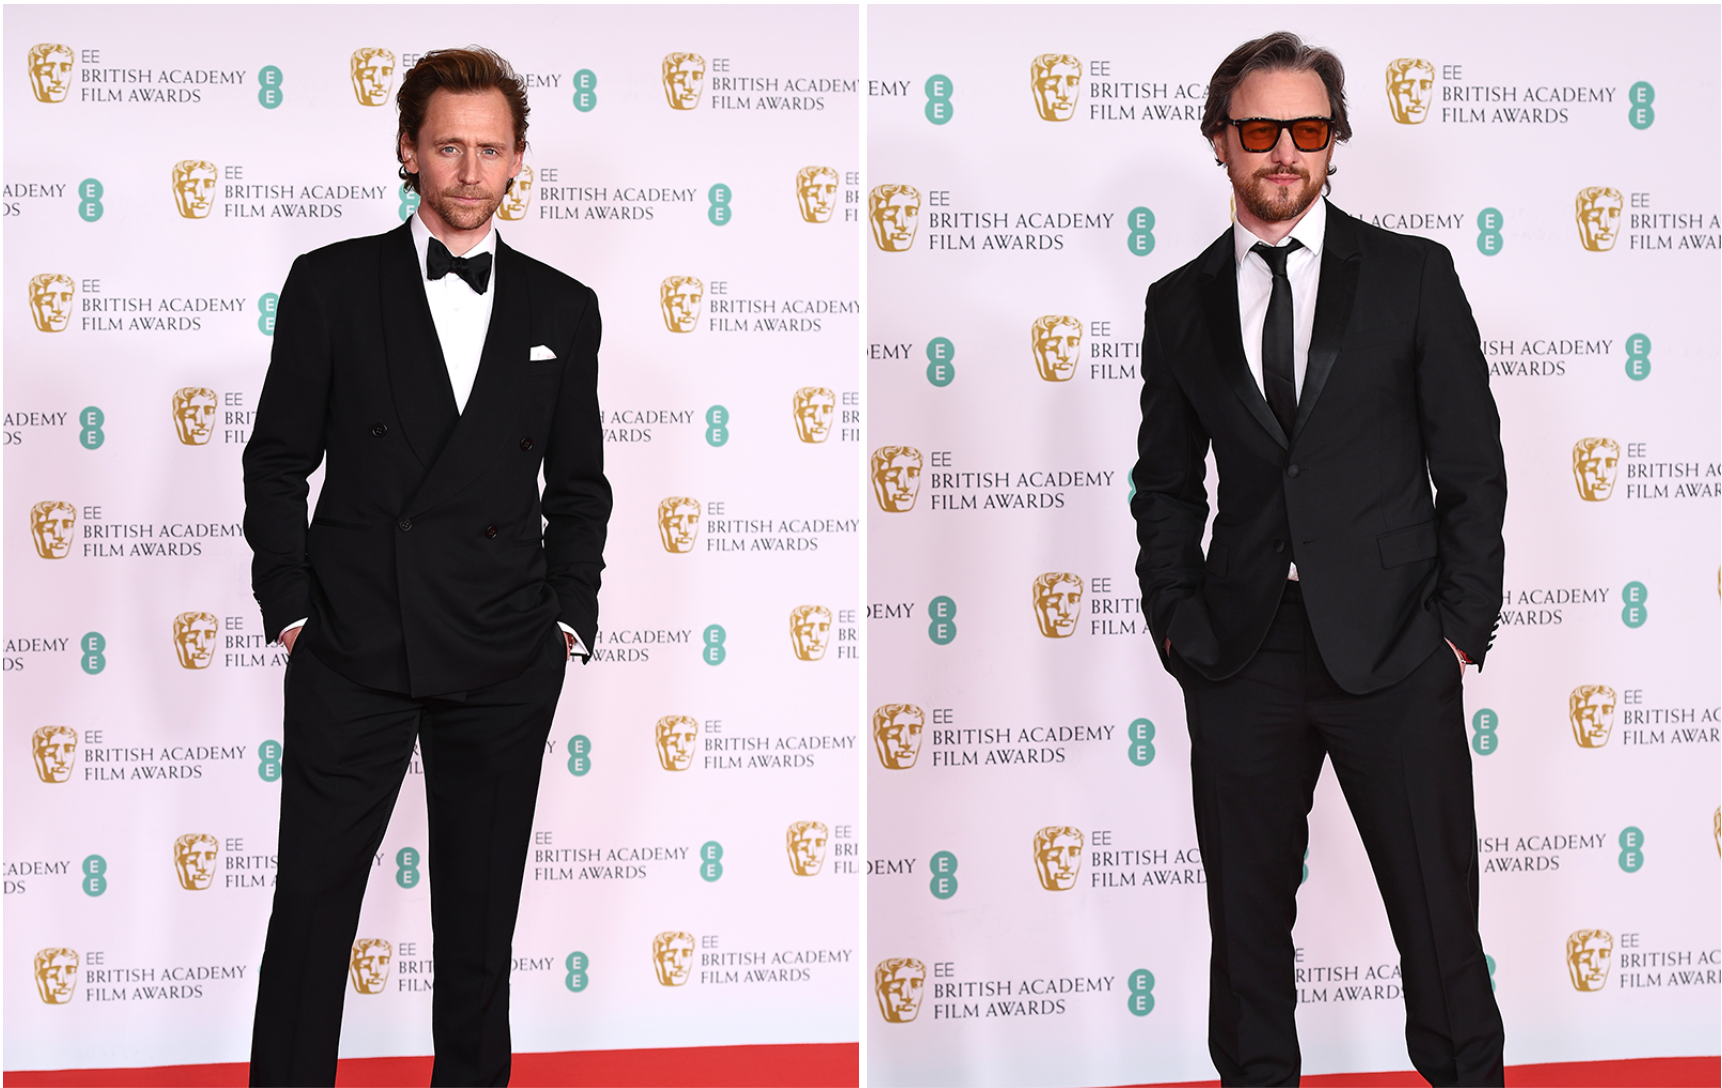 Nhiều sao nam chọn vest đen làm trang phục khi tham dự thảm đỏ. Một vài chi tiết khác biệt được các sao nam lựa chọn, trong khi Tom Hiddleston cài nơ thì James McAvoy lại tạo sự trẻ trung với kính râm.